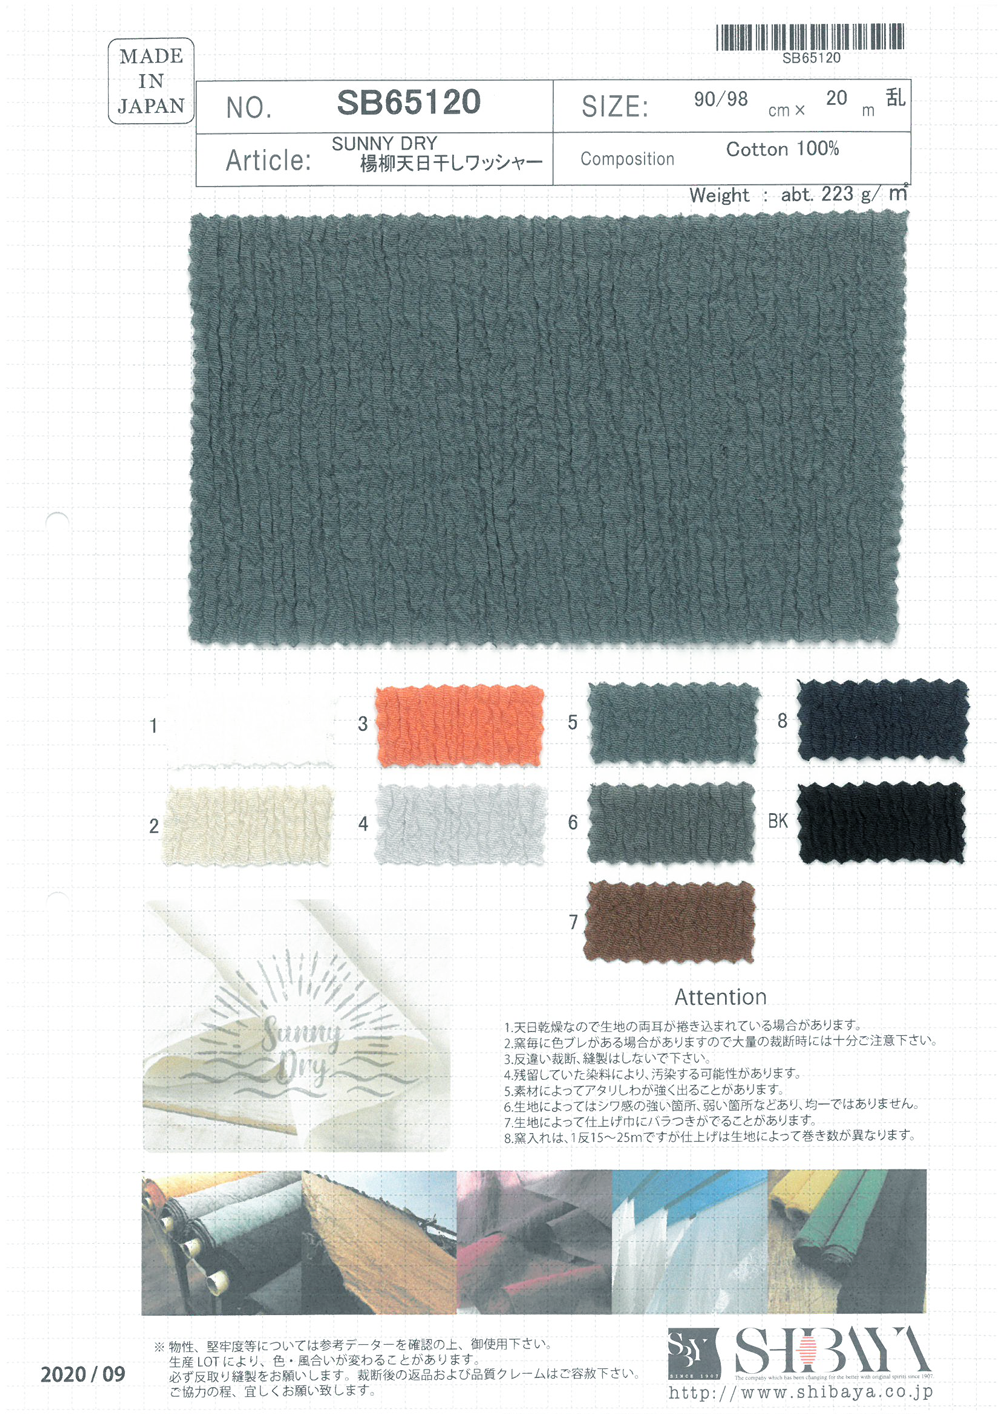 SB65120 SUNNY DRY Yoryu (Crêpe Ridée) Traitement à La Laveuse Séchée Au Soleil[Fabrication De Textile] SHIBAYA